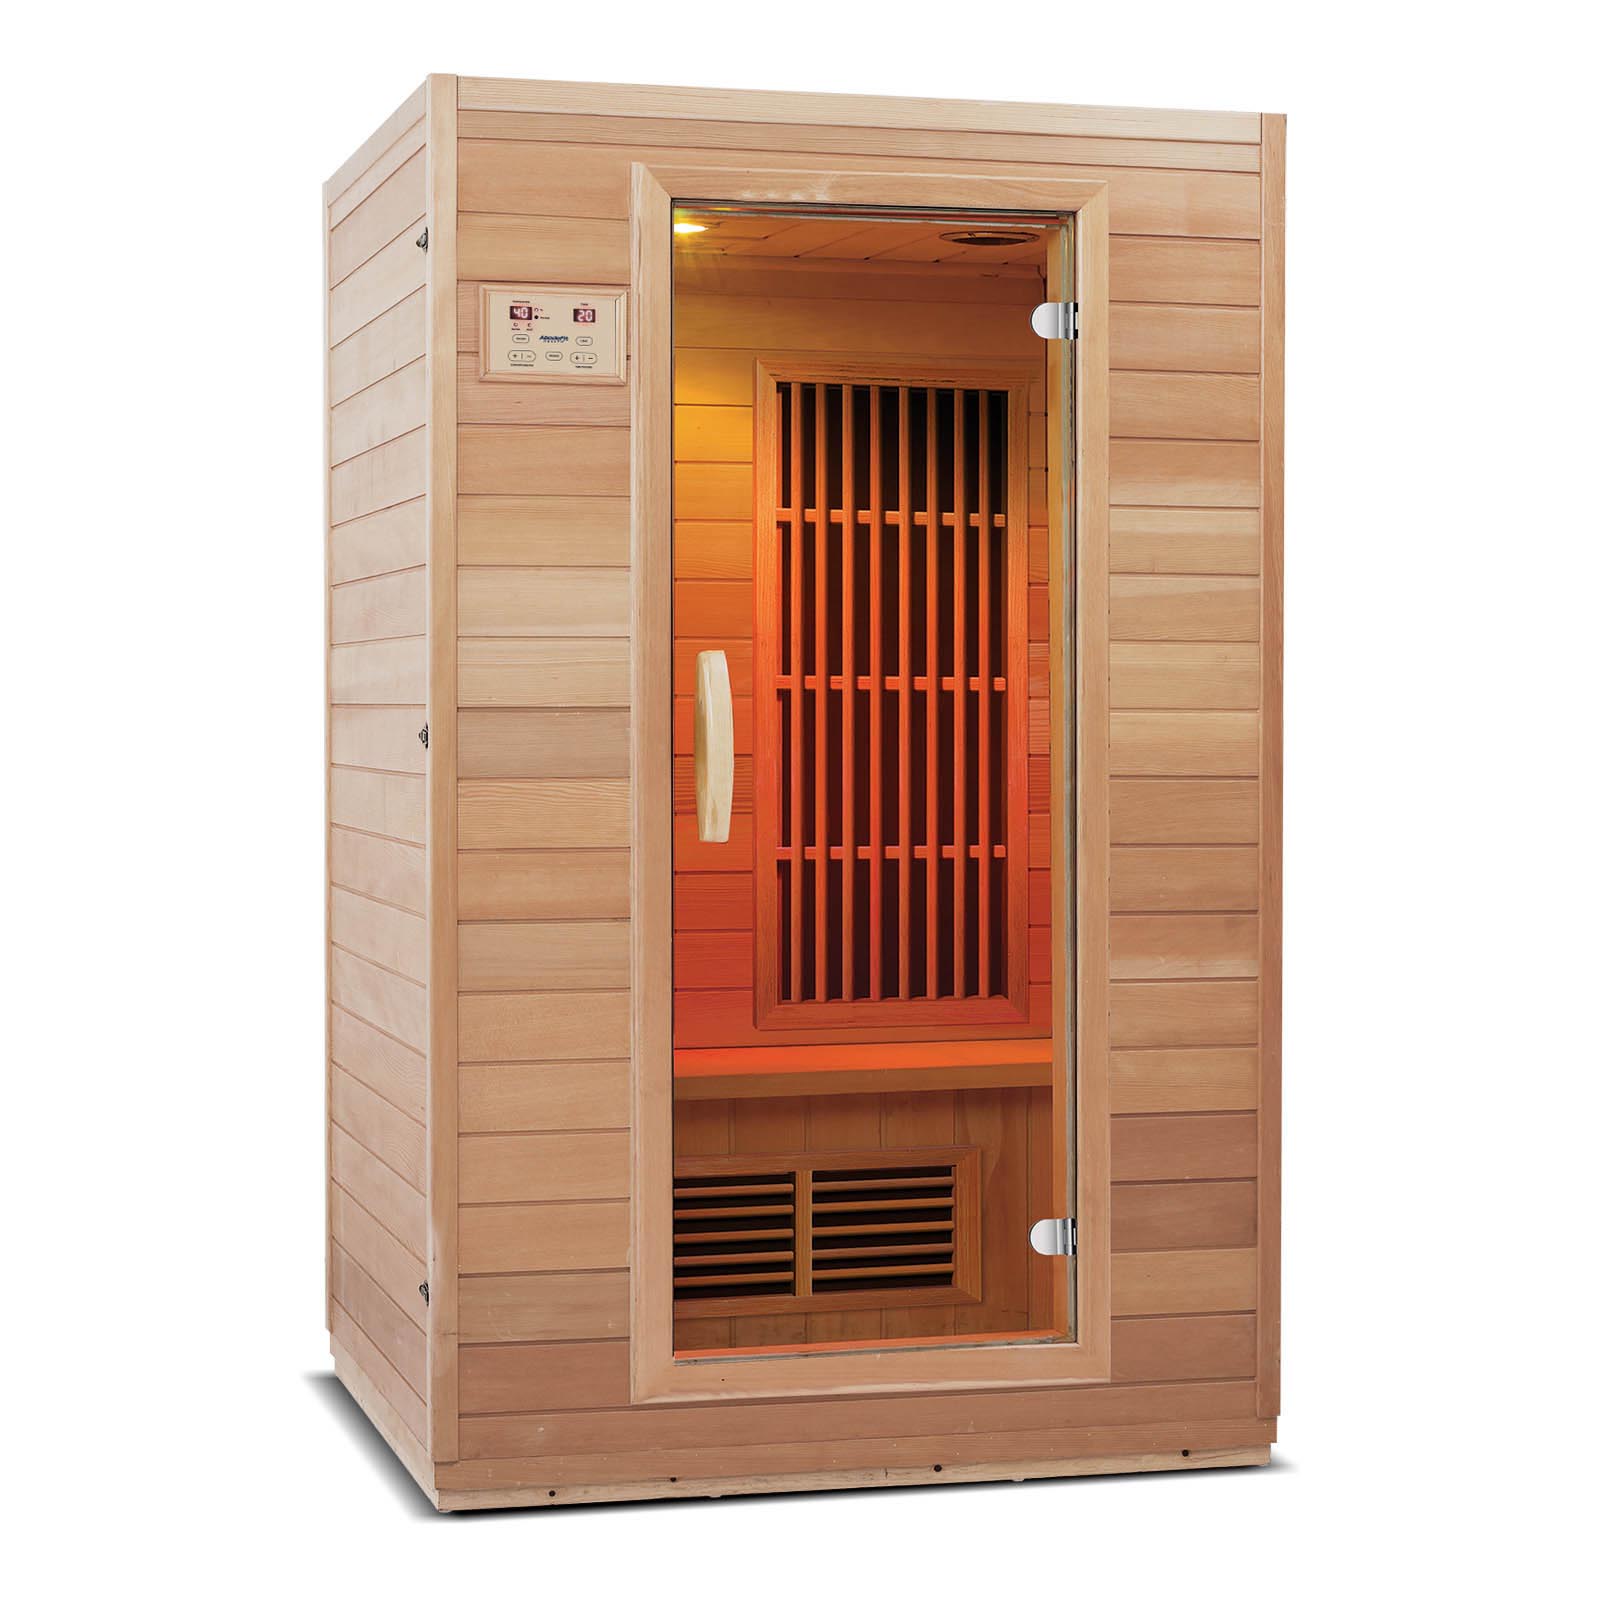 Zen Ferninfrarot-Sauna für 2 Personen